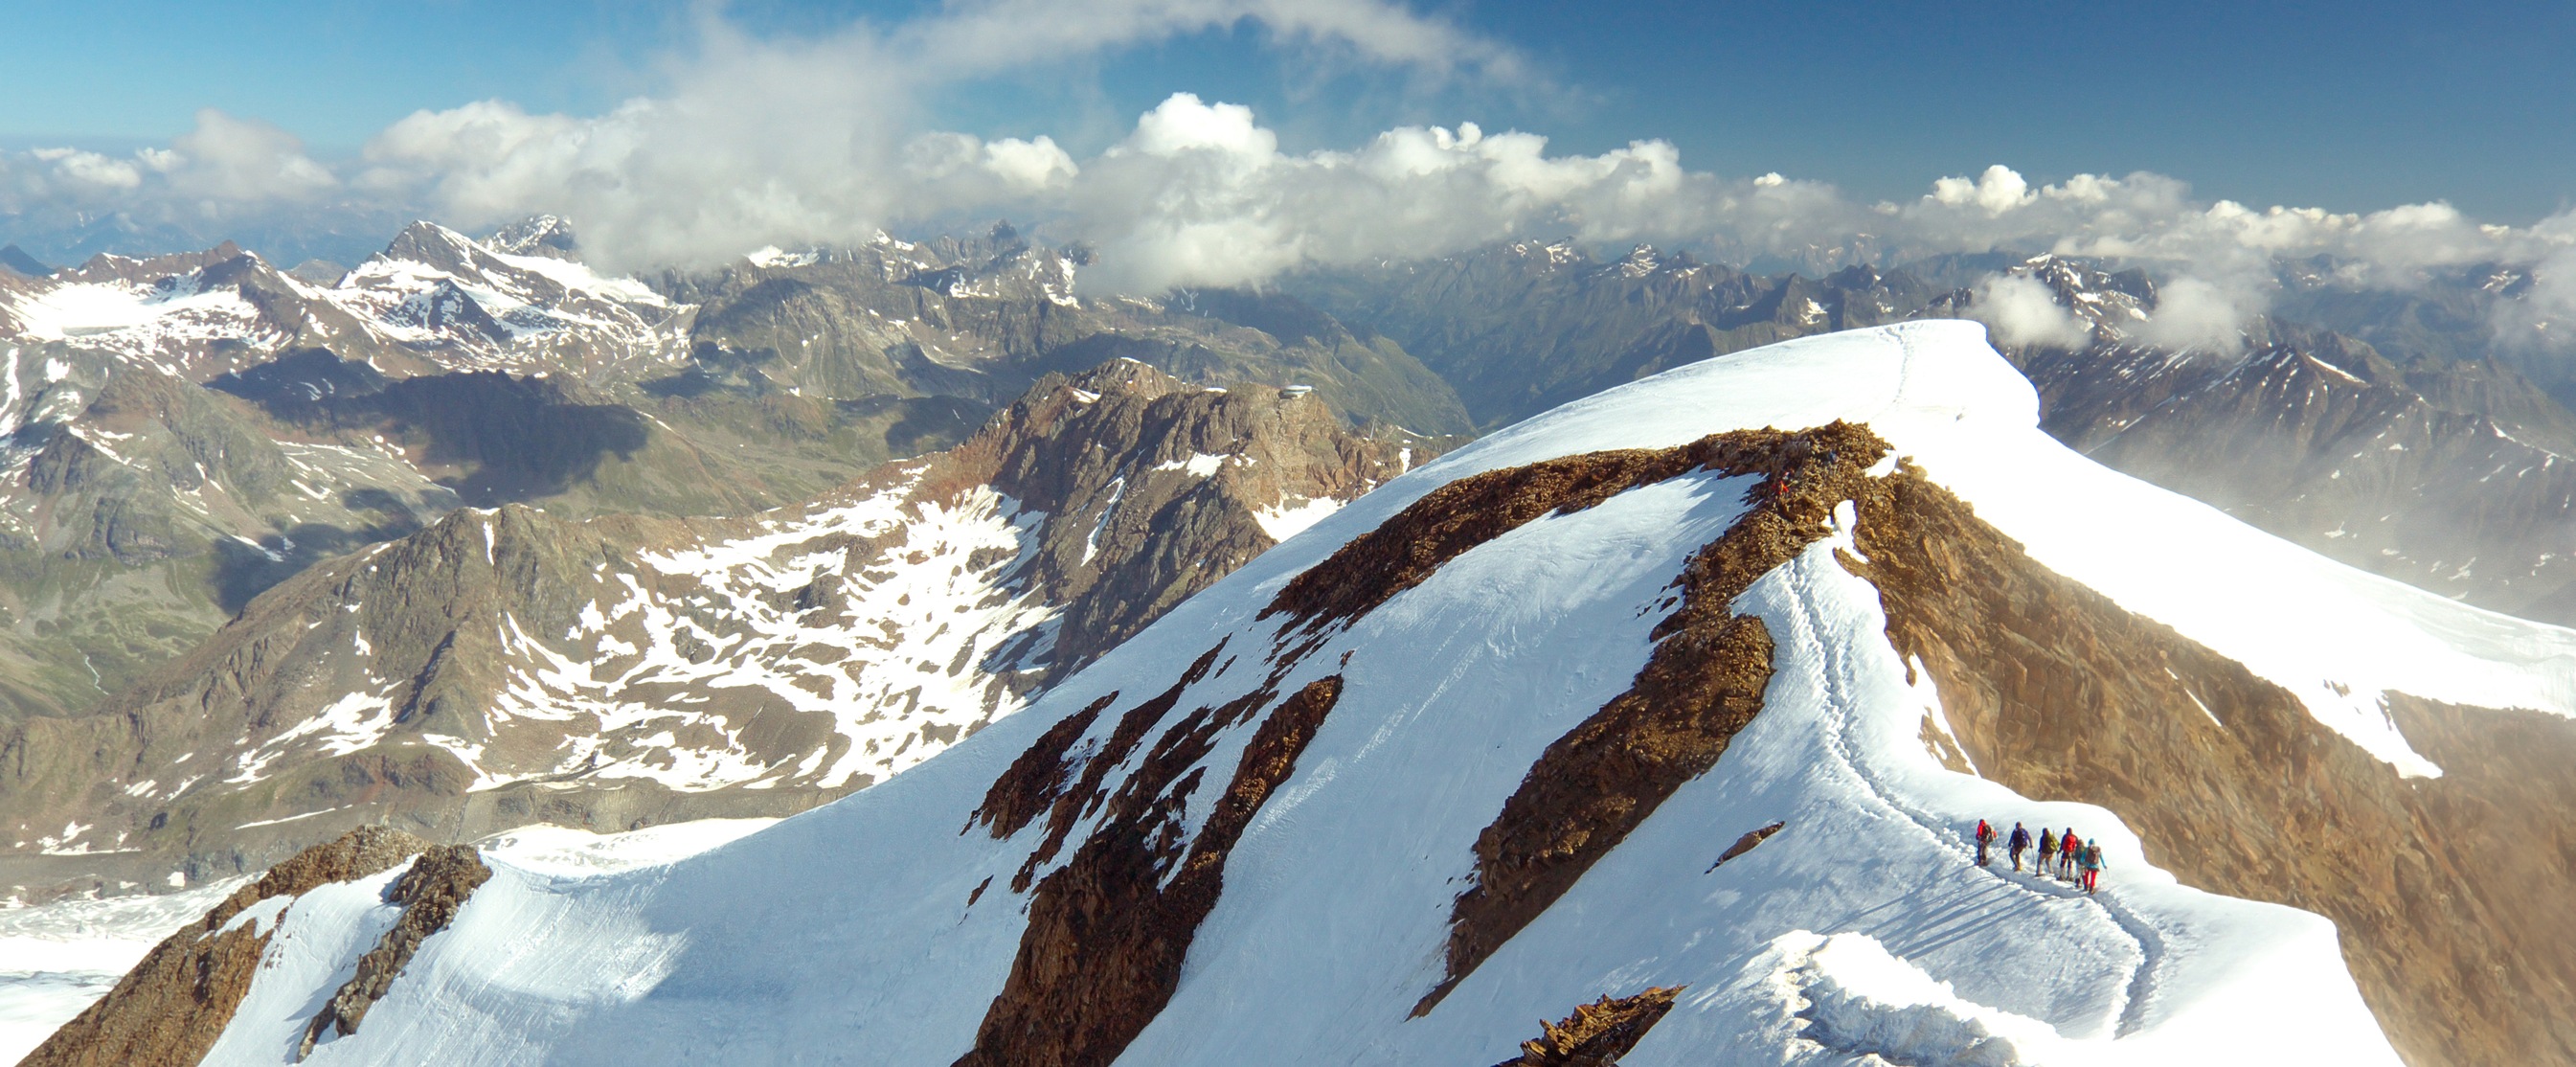 View from Wildspitze Peak, Ötztal Alps, Austria